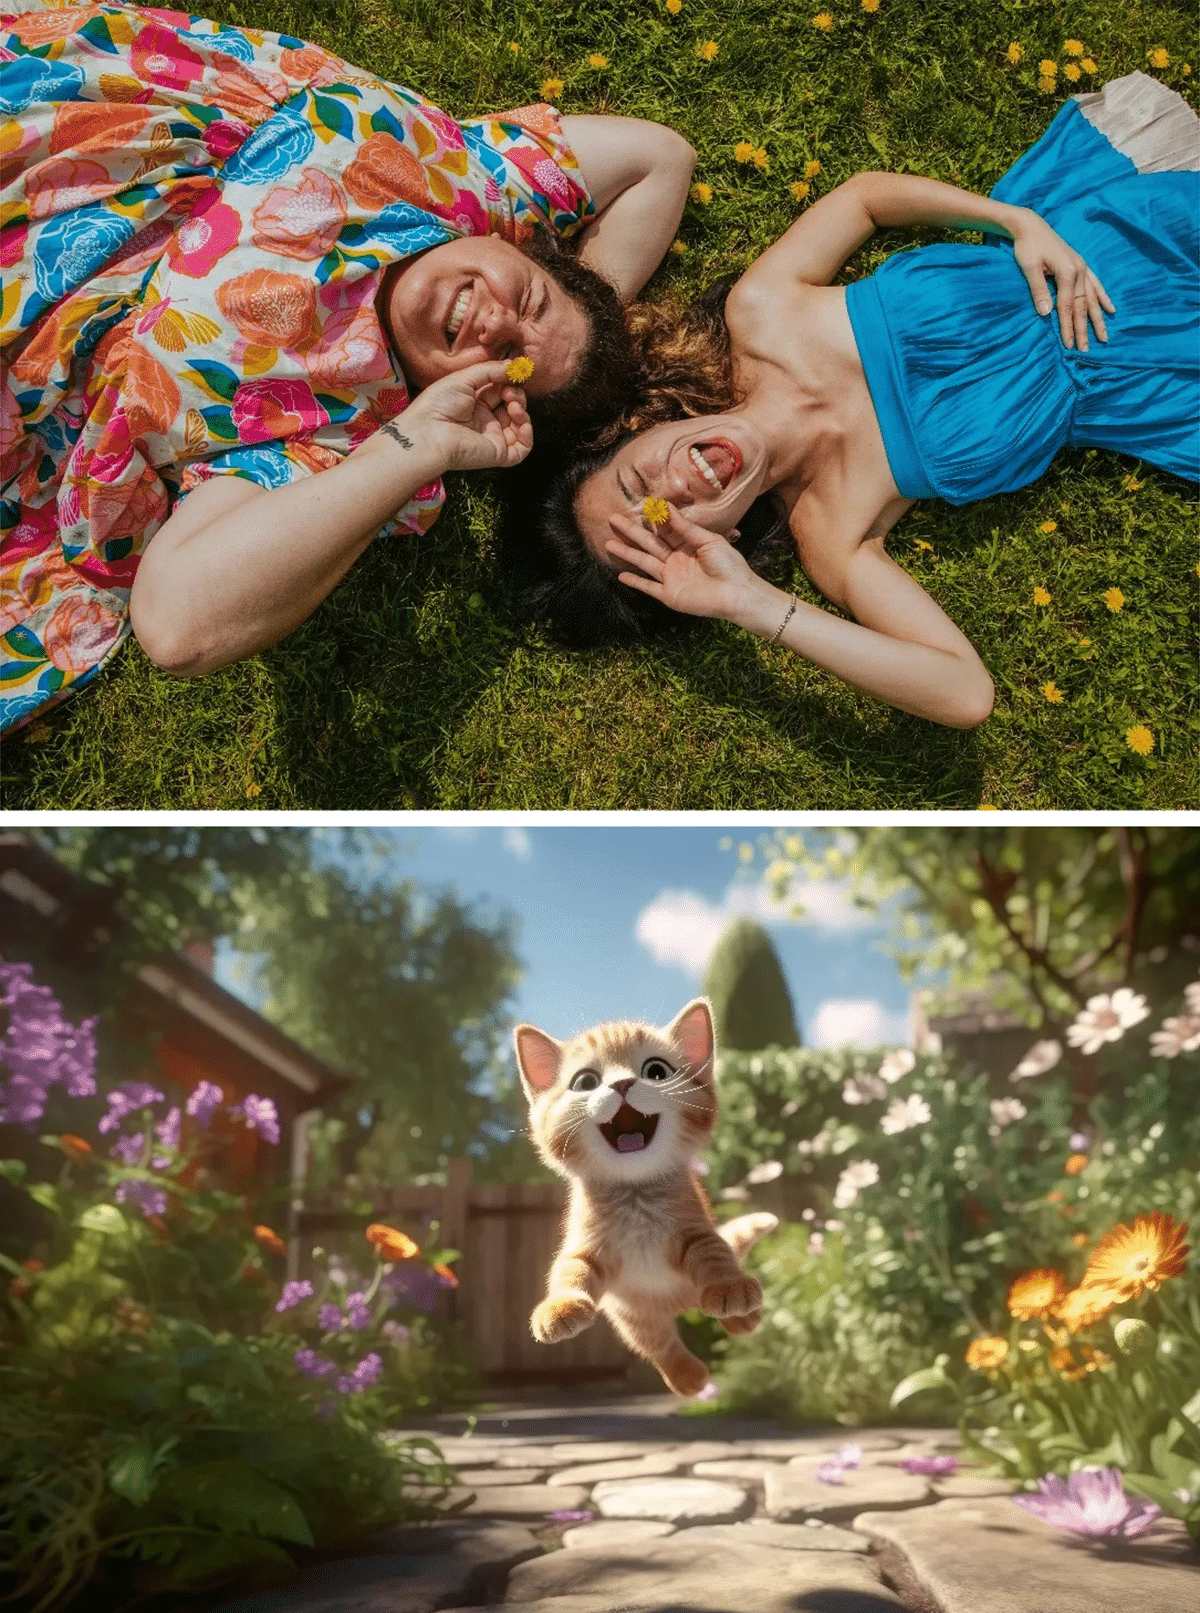 Oben: Zwei Personen lächeln und liegen entspannt auf einer Wiese, während sie Gänseblümchen über ihren Augen halten. Unten: Ein glückliches Kätzchen scheint durch einen farbenfrohen Garten zu springen.